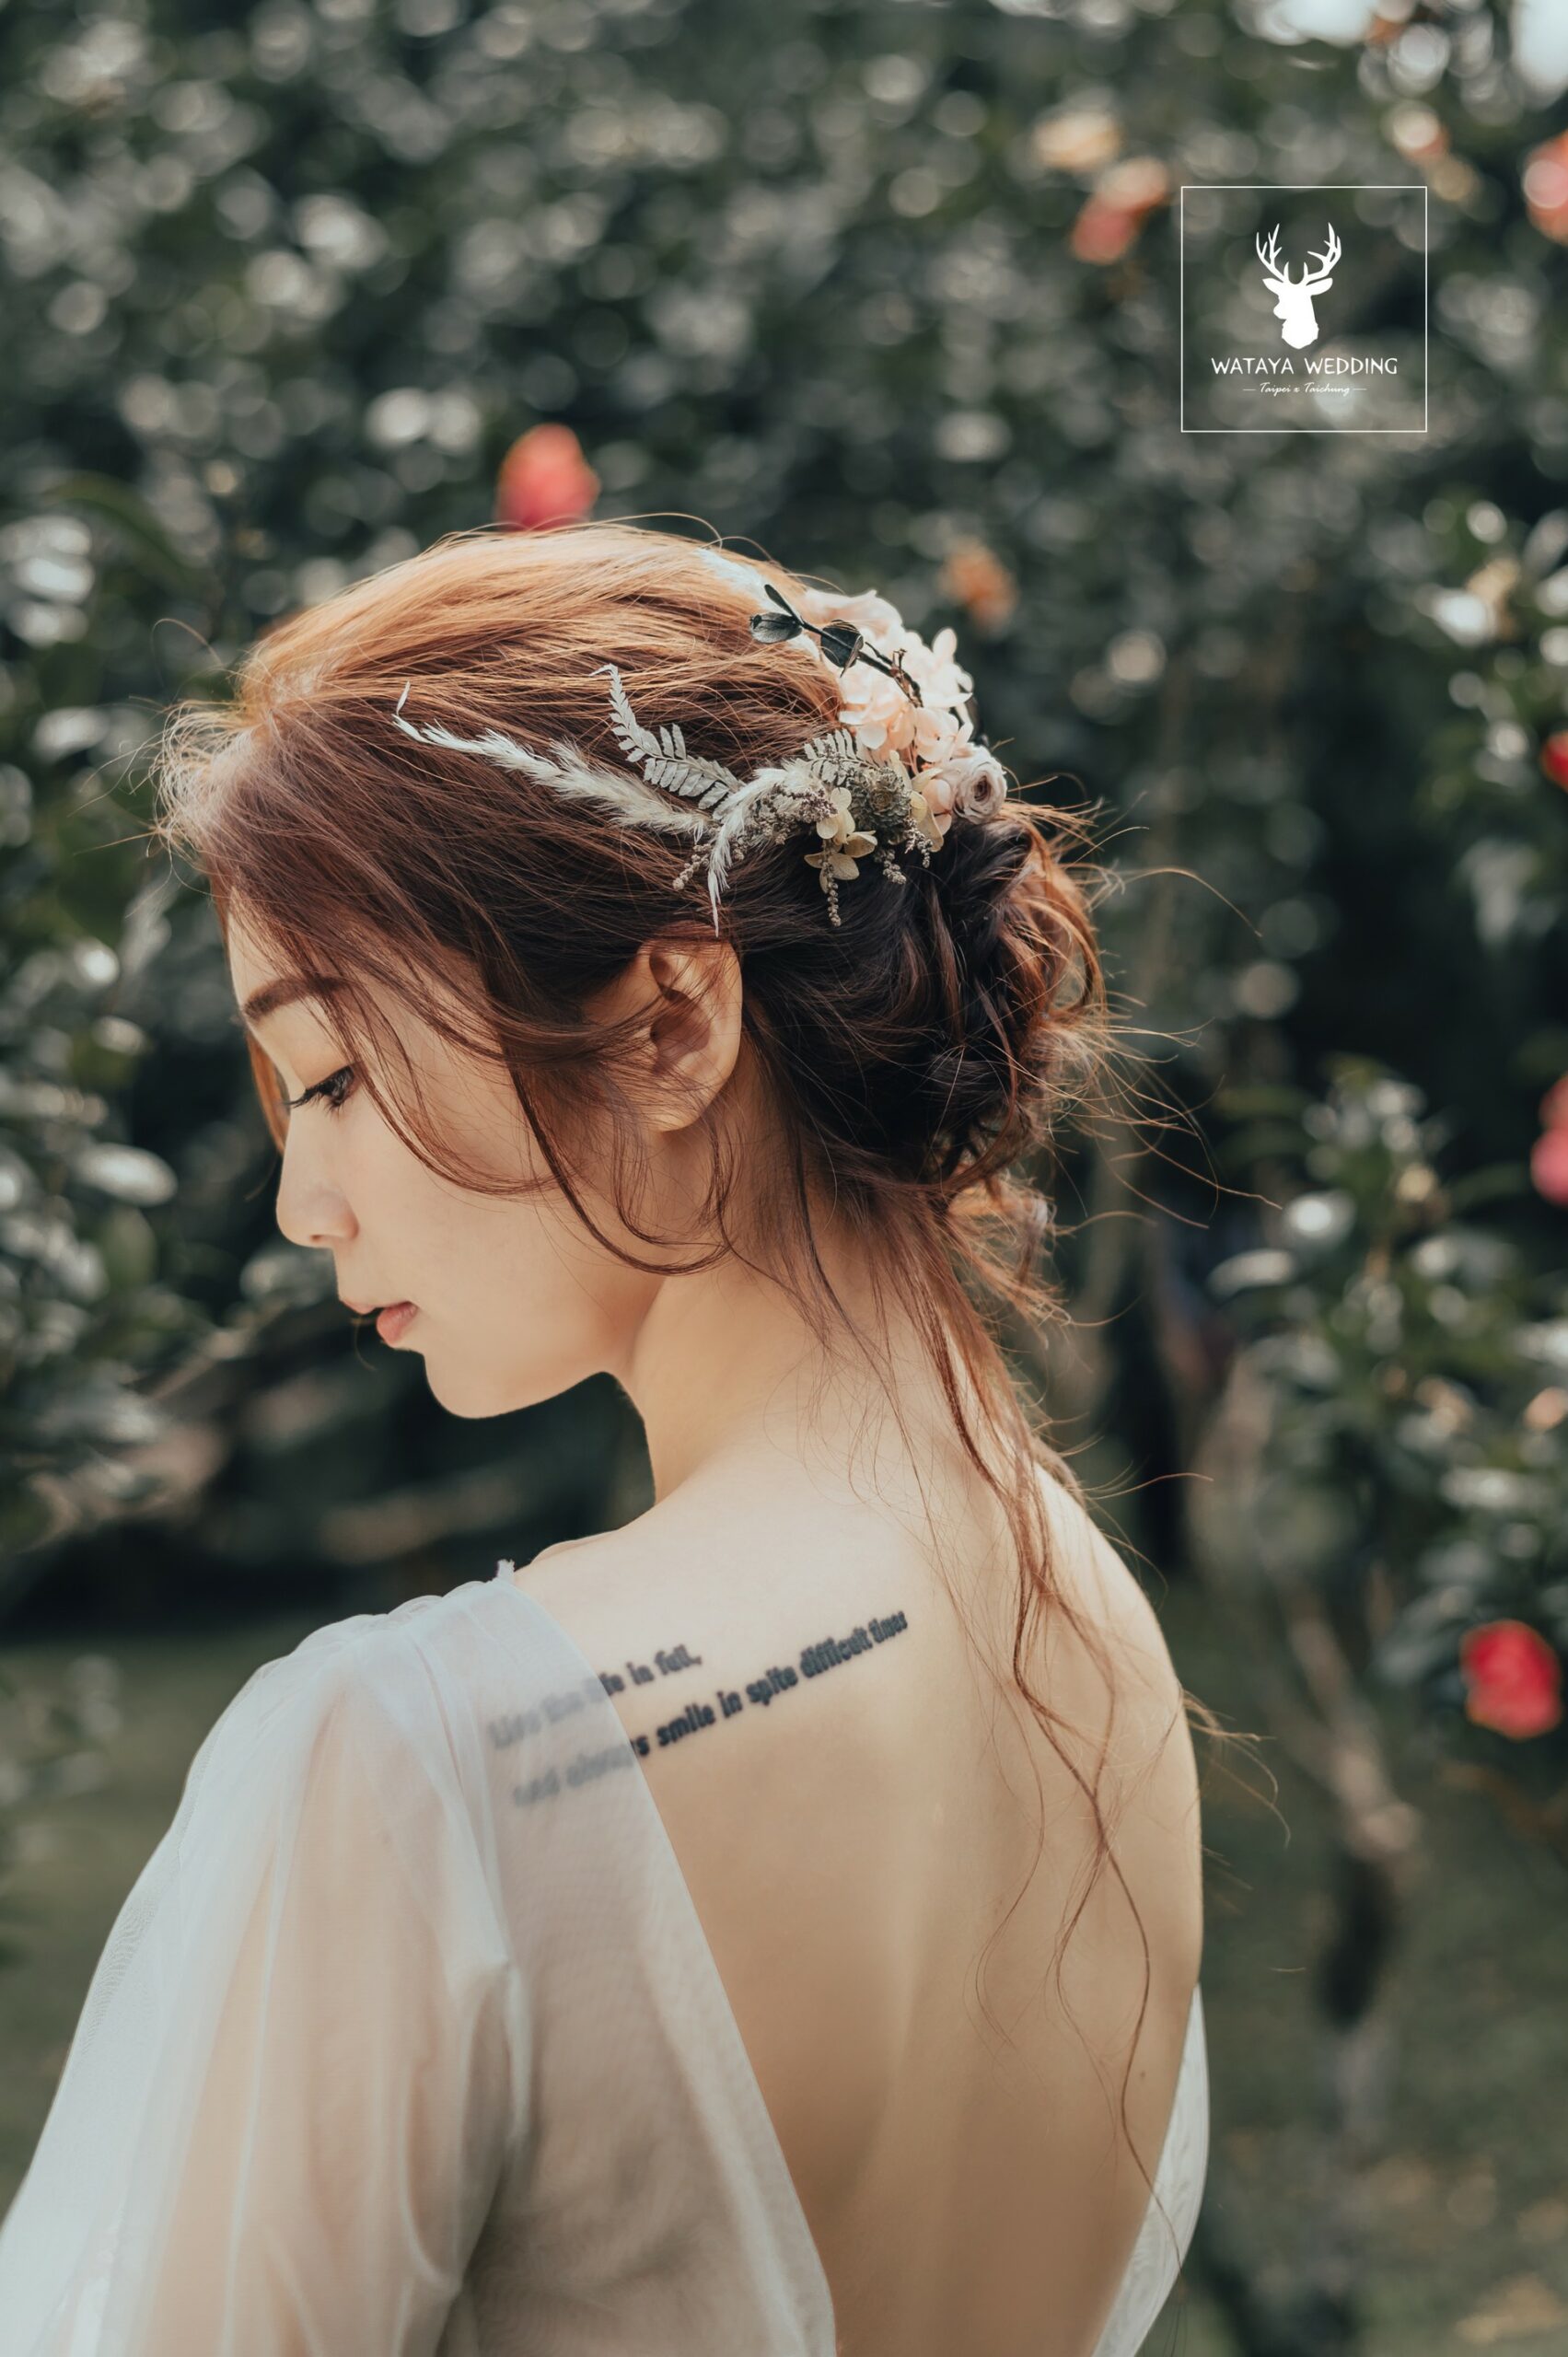 綿谷結婚式-婚紗攝影作品 (2)